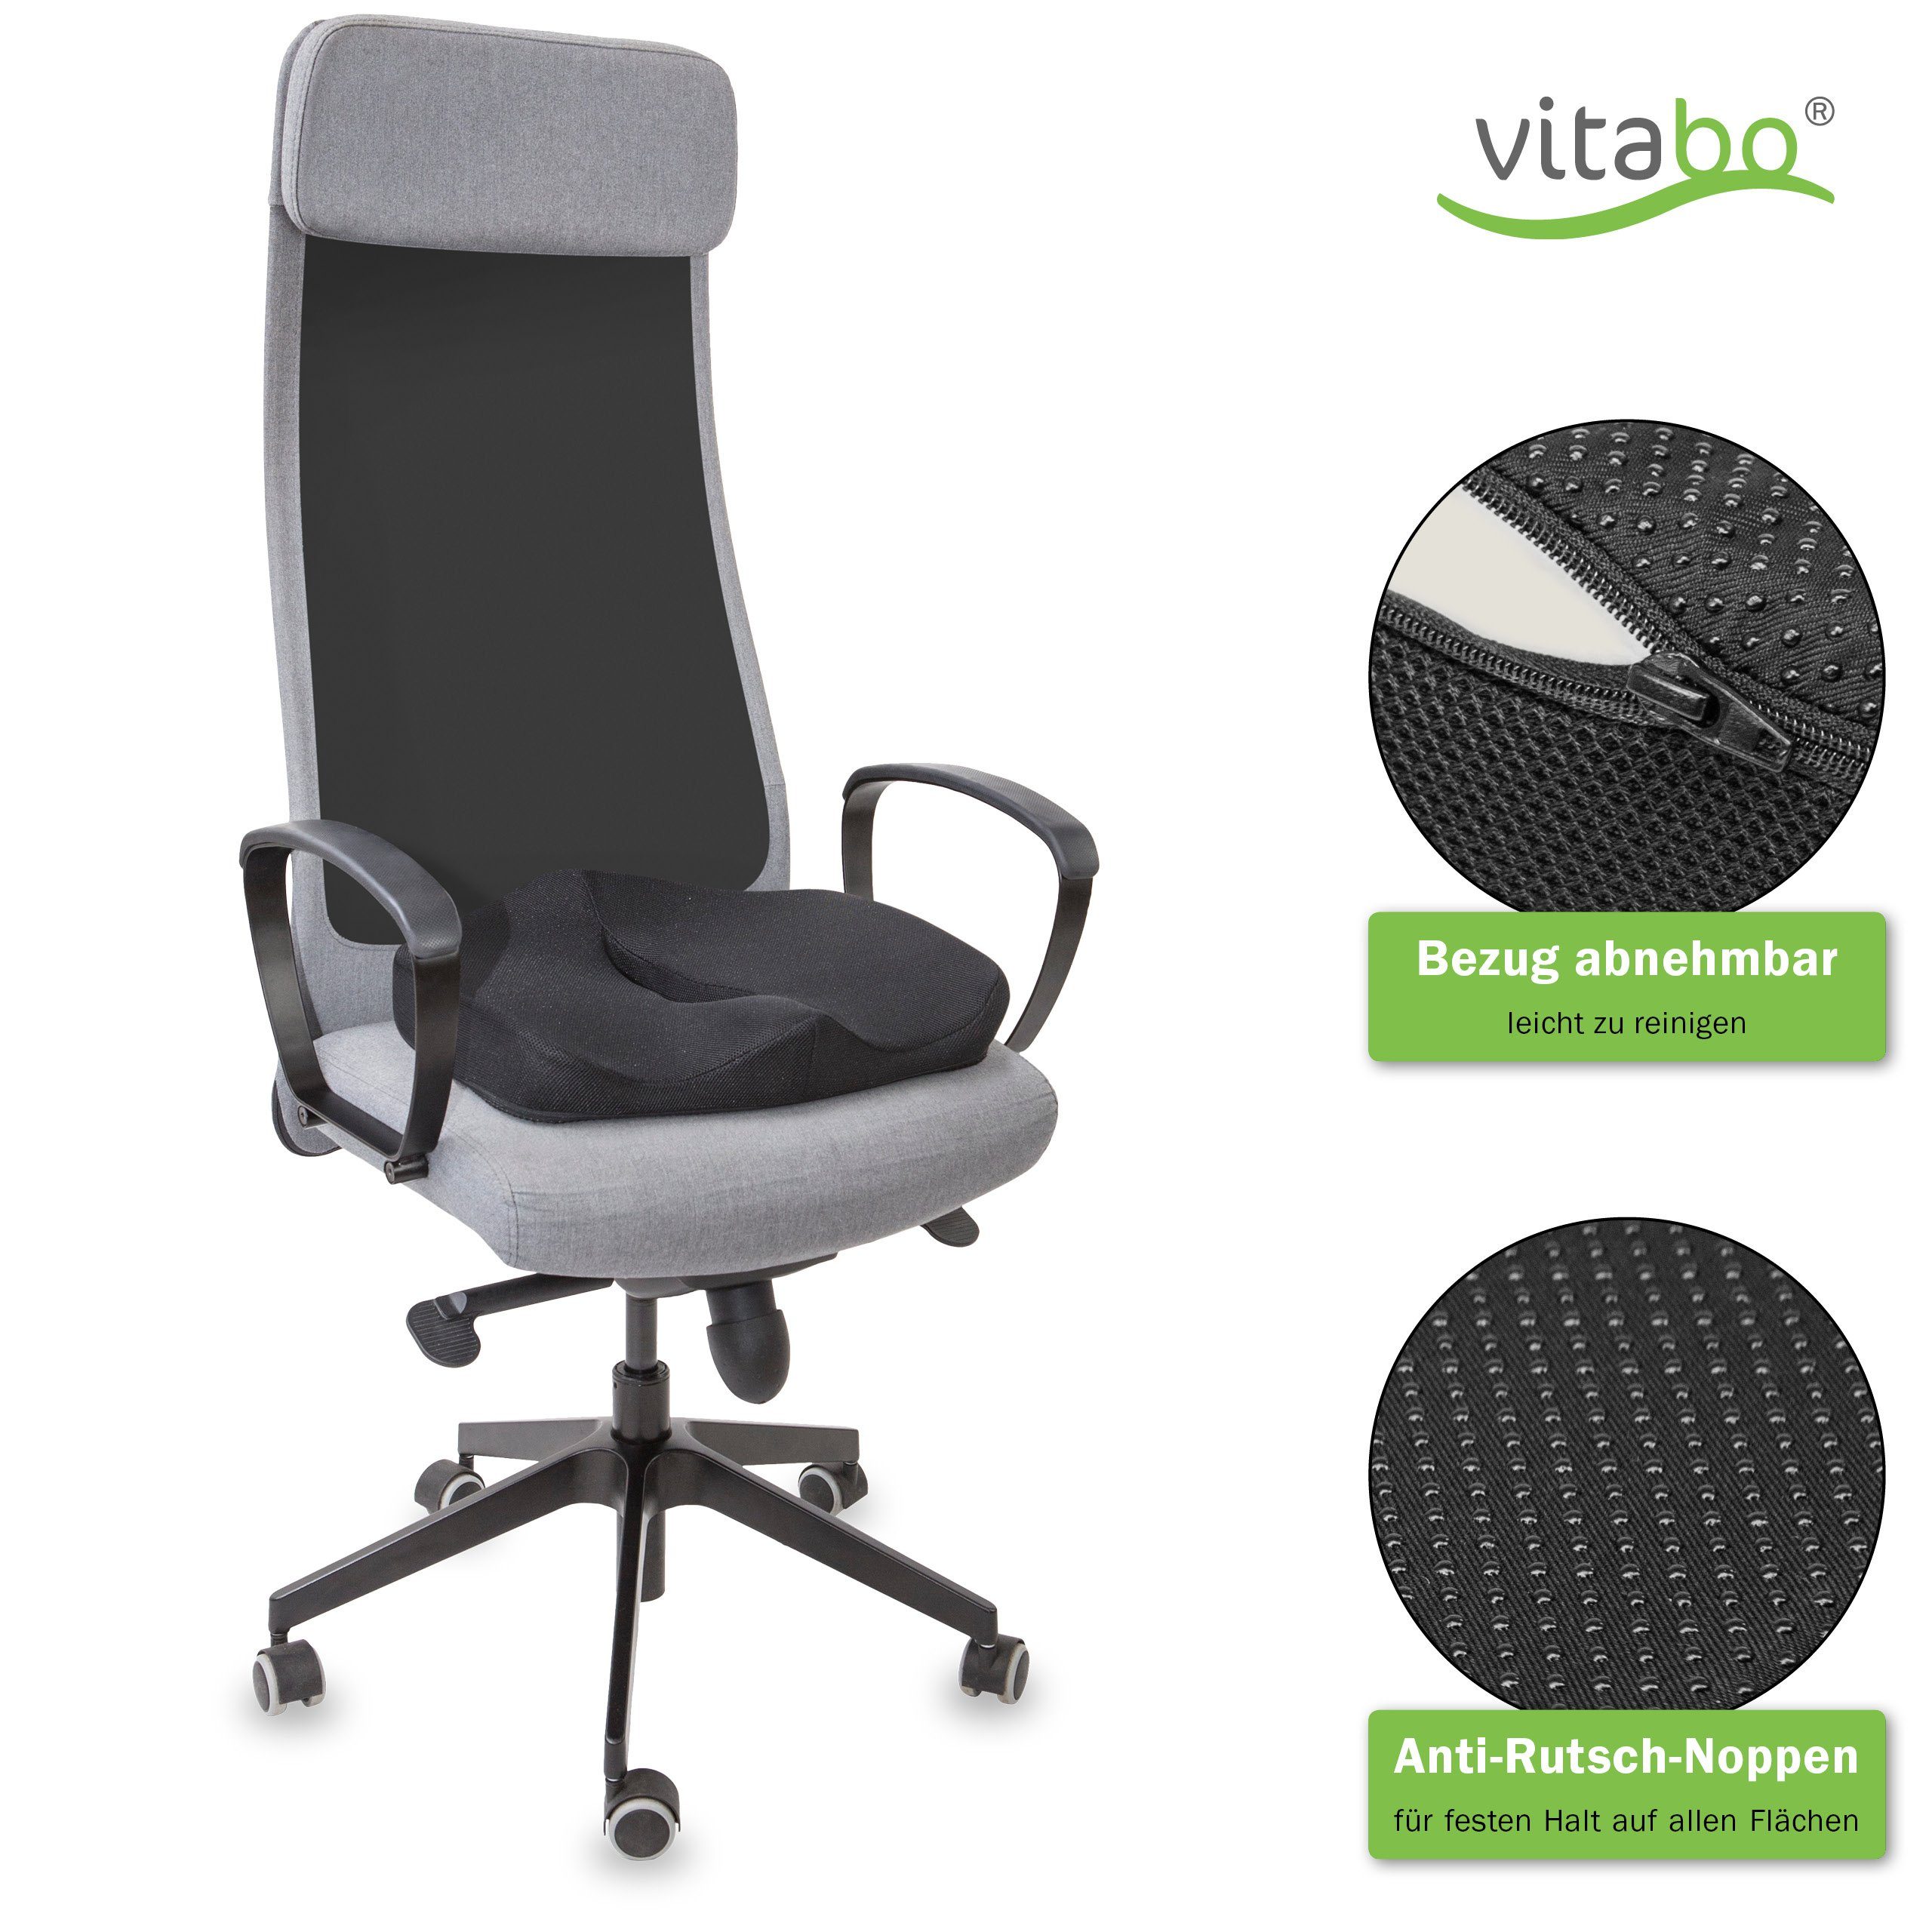 Vitabo Steißbeinkissen Vitabo ergonomisch geformtes Sitzkissen I